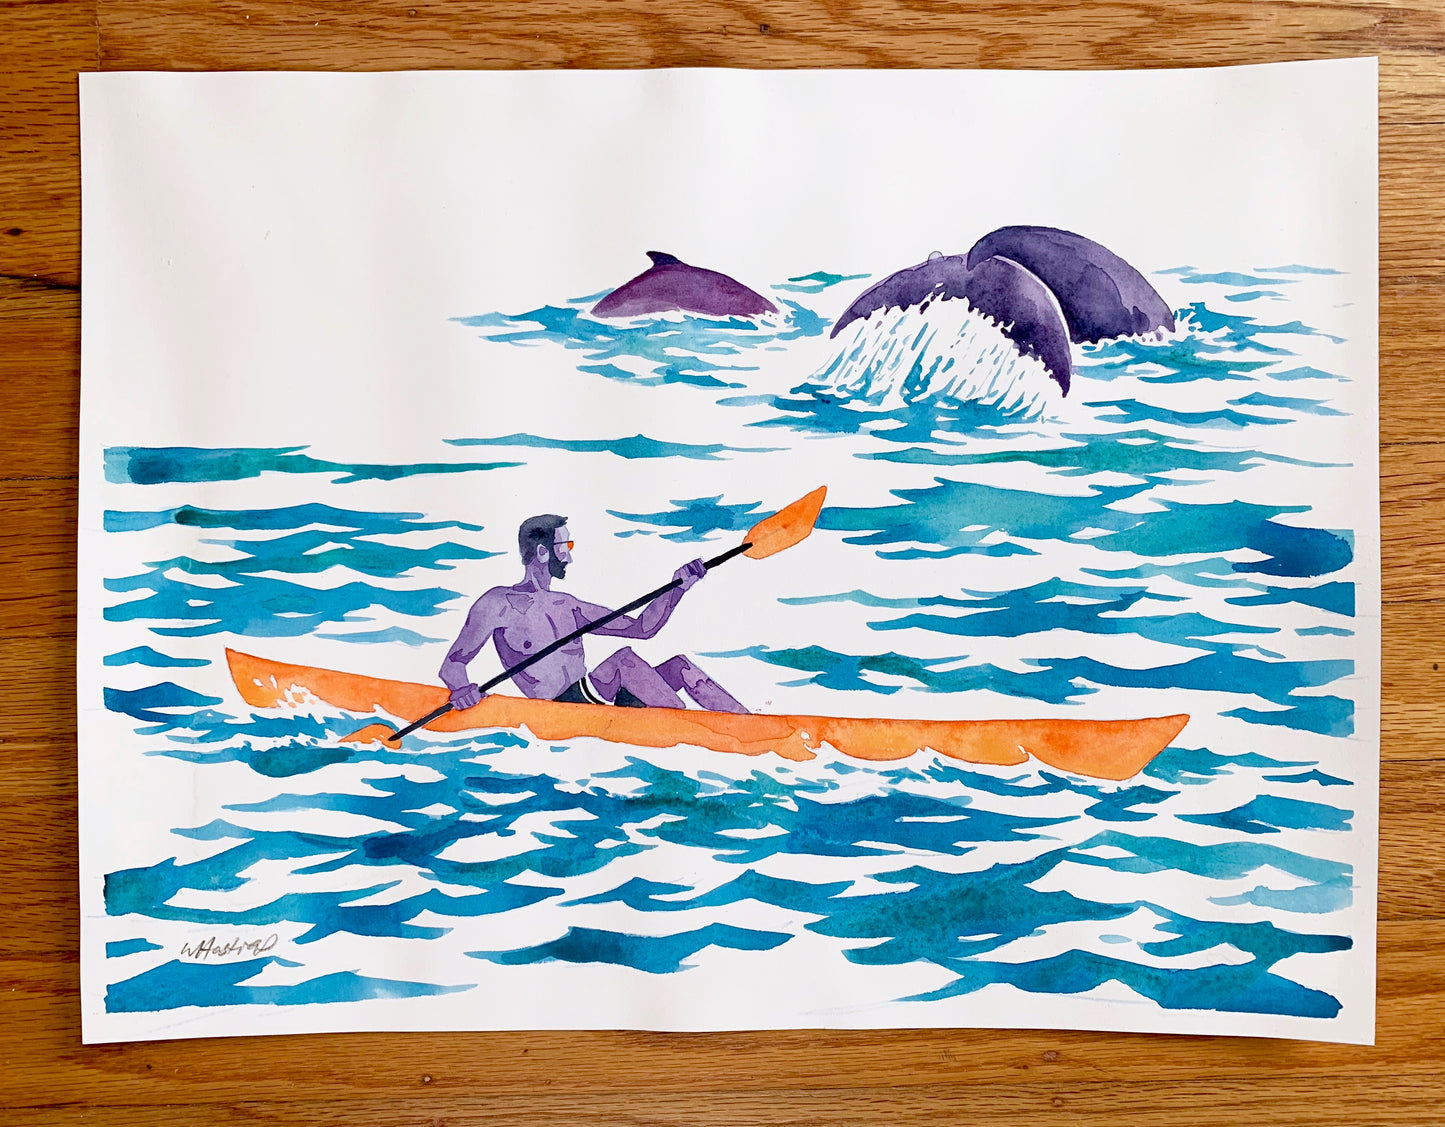 Sea Kayaker Study - Original Watercolor Painting